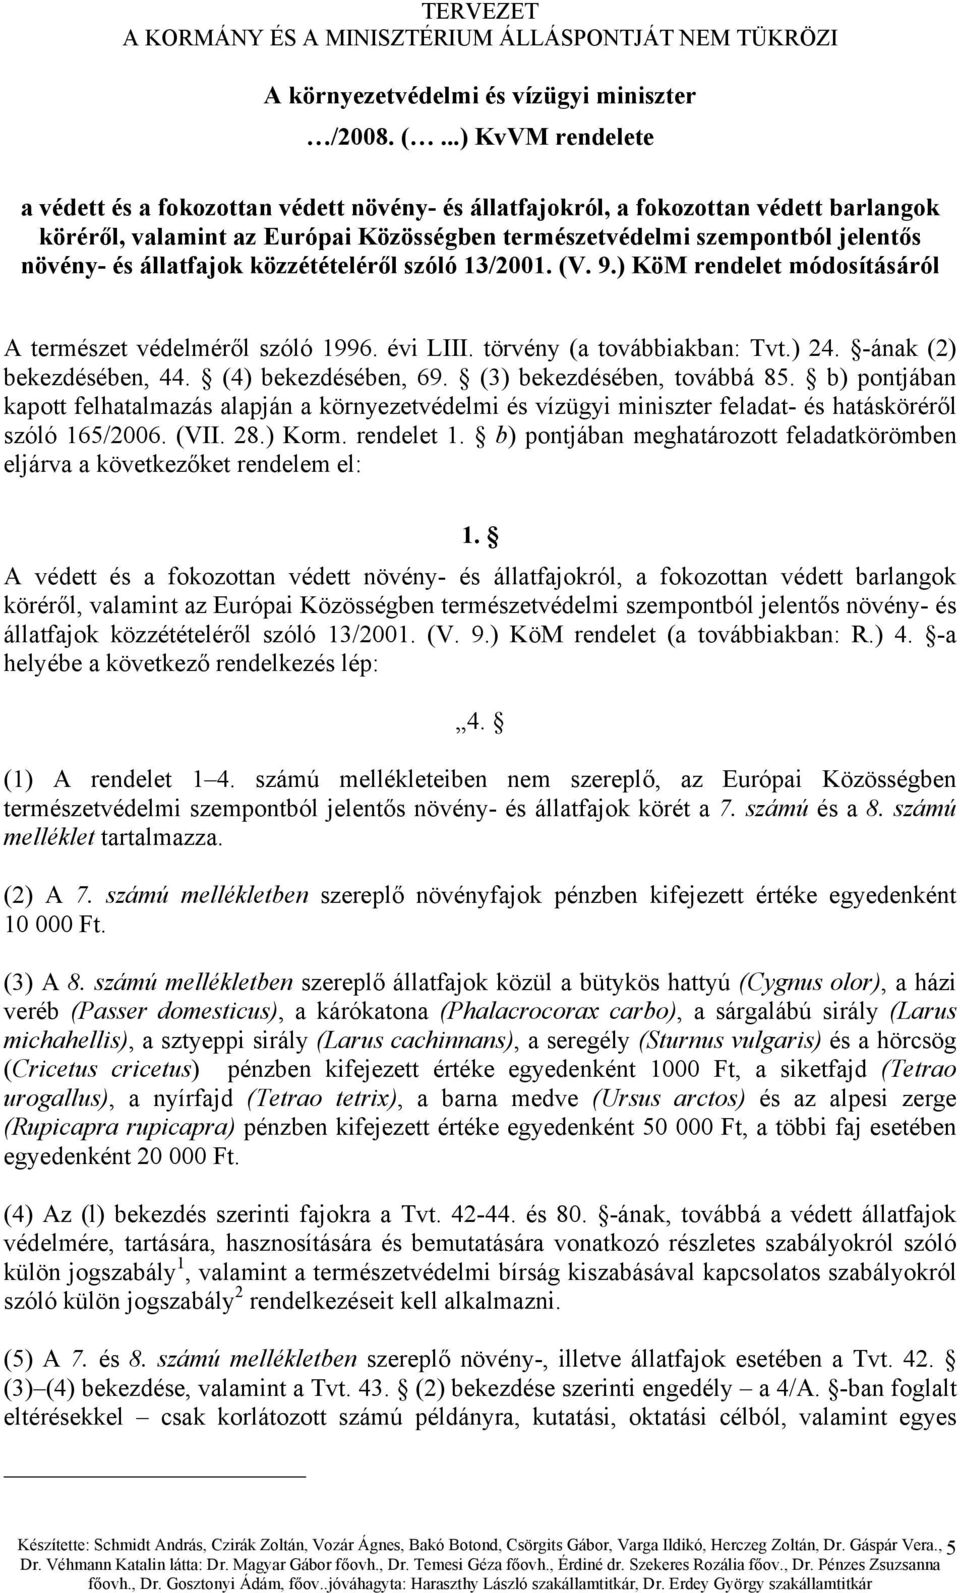 állatfajok közzétételéről szóló 13/2001. (V. 9.) KöM rendelet módosításáról A természet védelméről szóló 1996. évi LIII. törvény (a továbbiakban: Tvt.) 24. -ának (2) bekezdésében, 44.